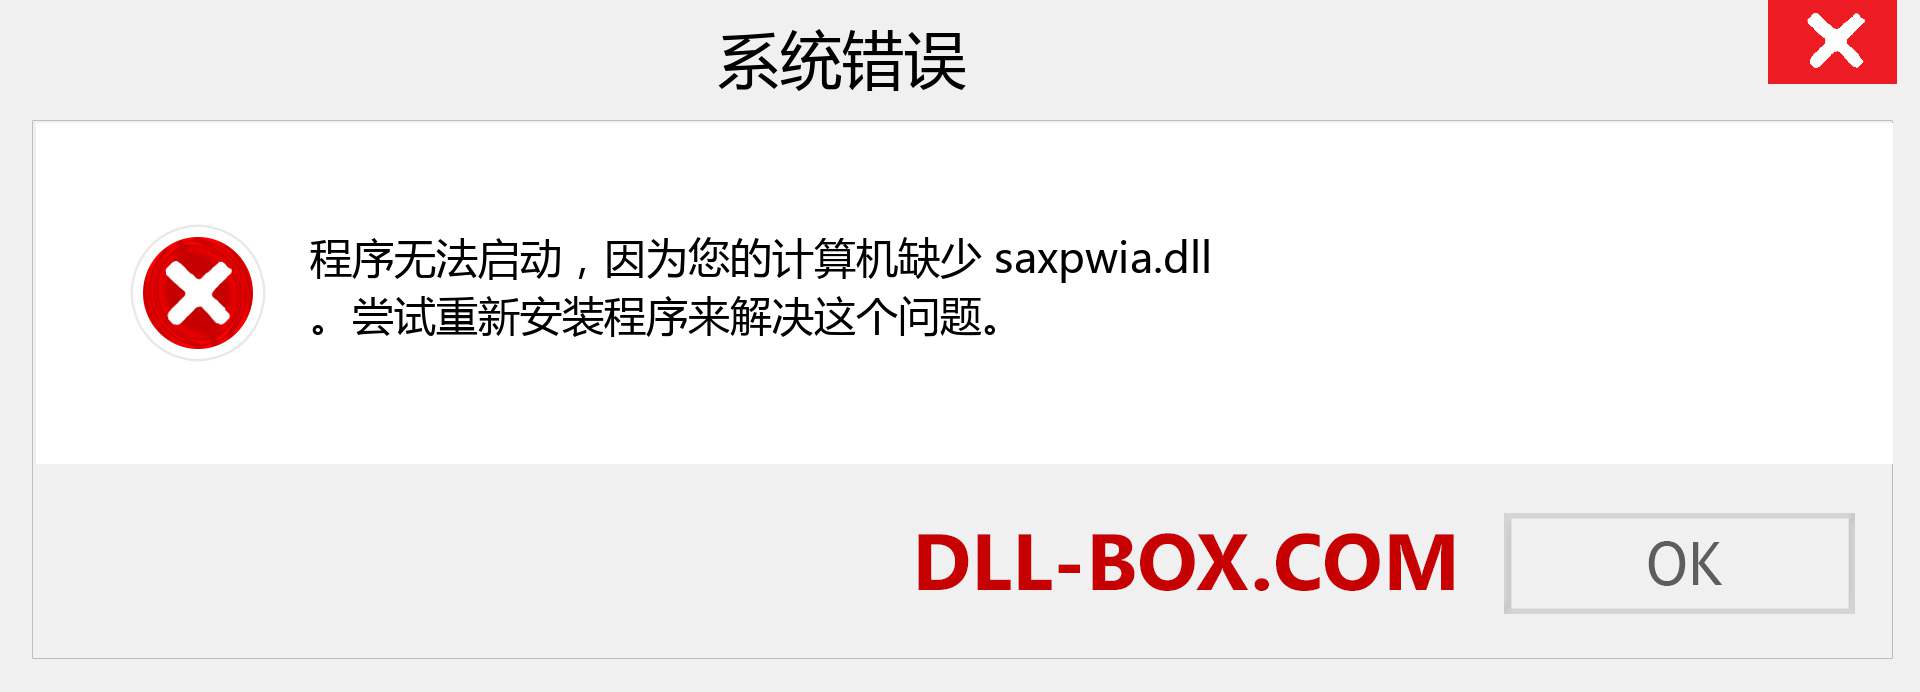 saxpwia.dll 文件丢失？。 适用于 Windows 7、8、10 的下载 - 修复 Windows、照片、图像上的 saxpwia dll 丢失错误